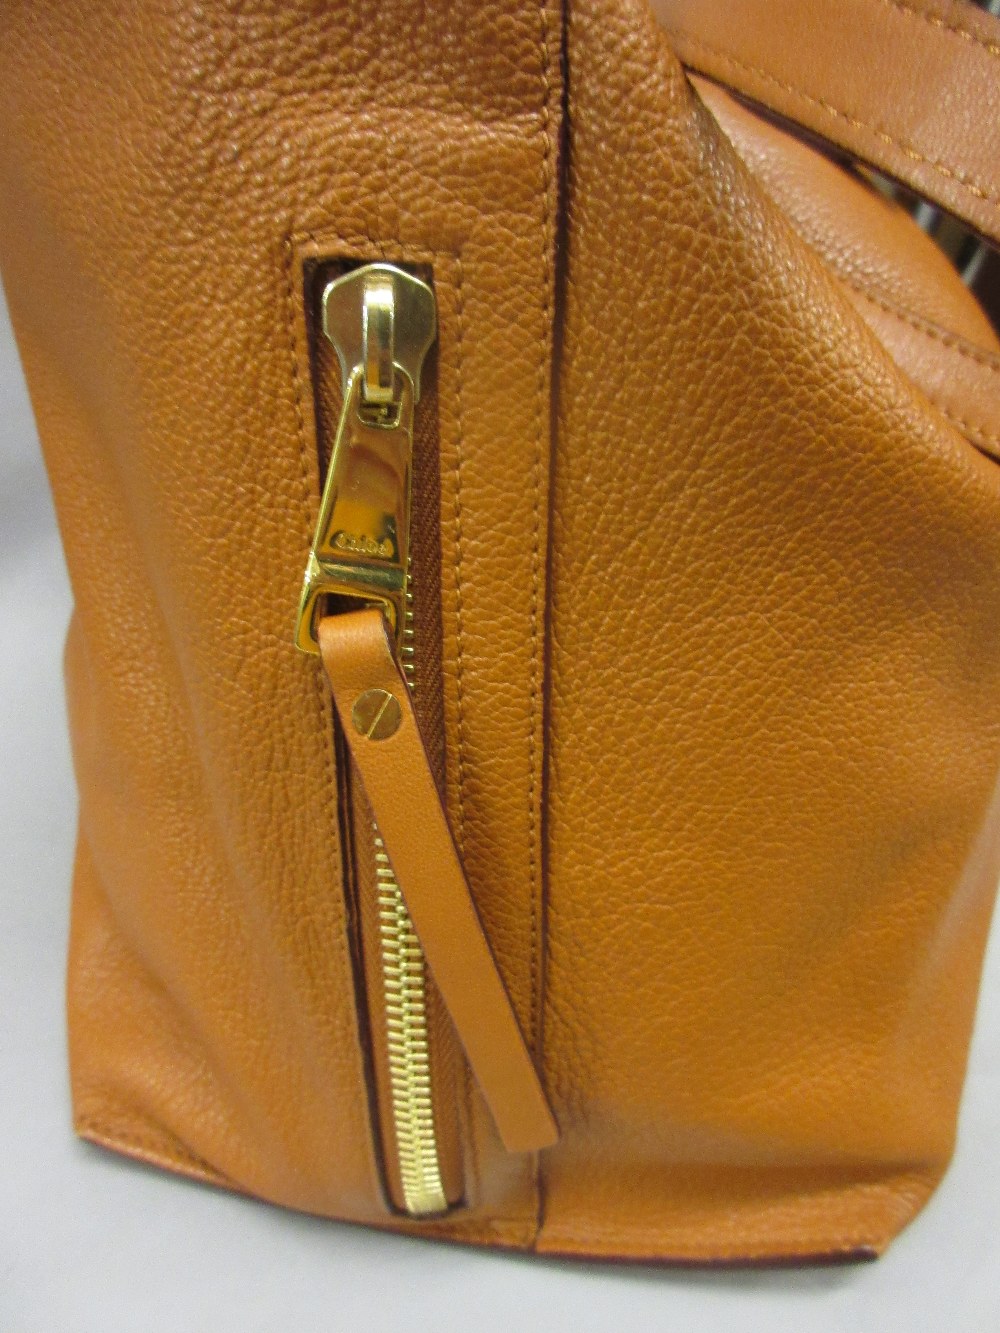 Chloe large Dilan shopper tote in hazel brown lambskin leather, - Image 2 of 5